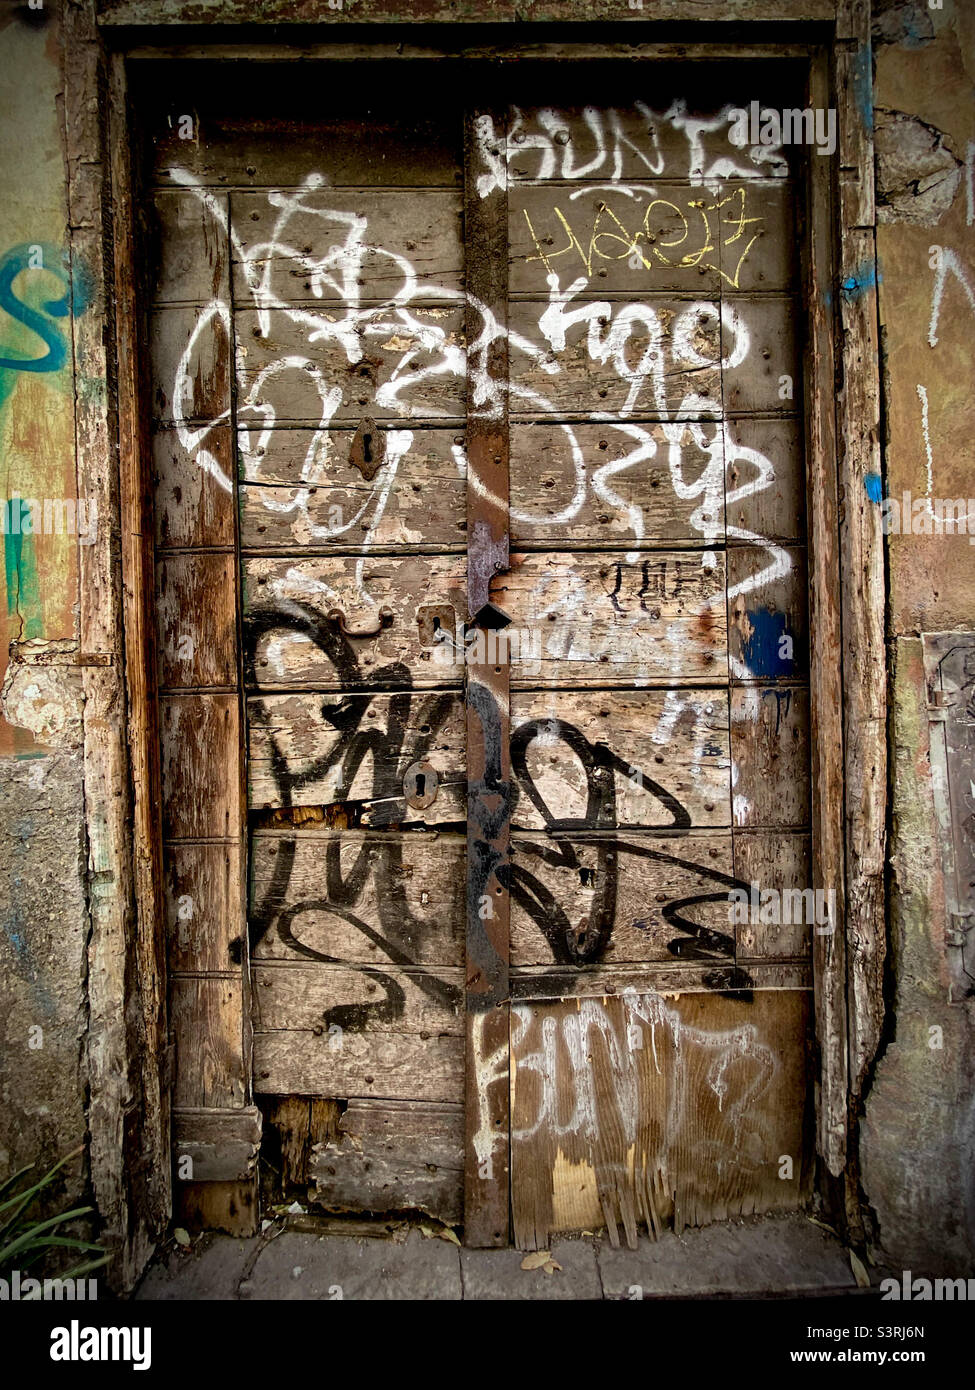 Graffidierten hölzernen Eingang in einem verlassenen Gebäude Stockfoto